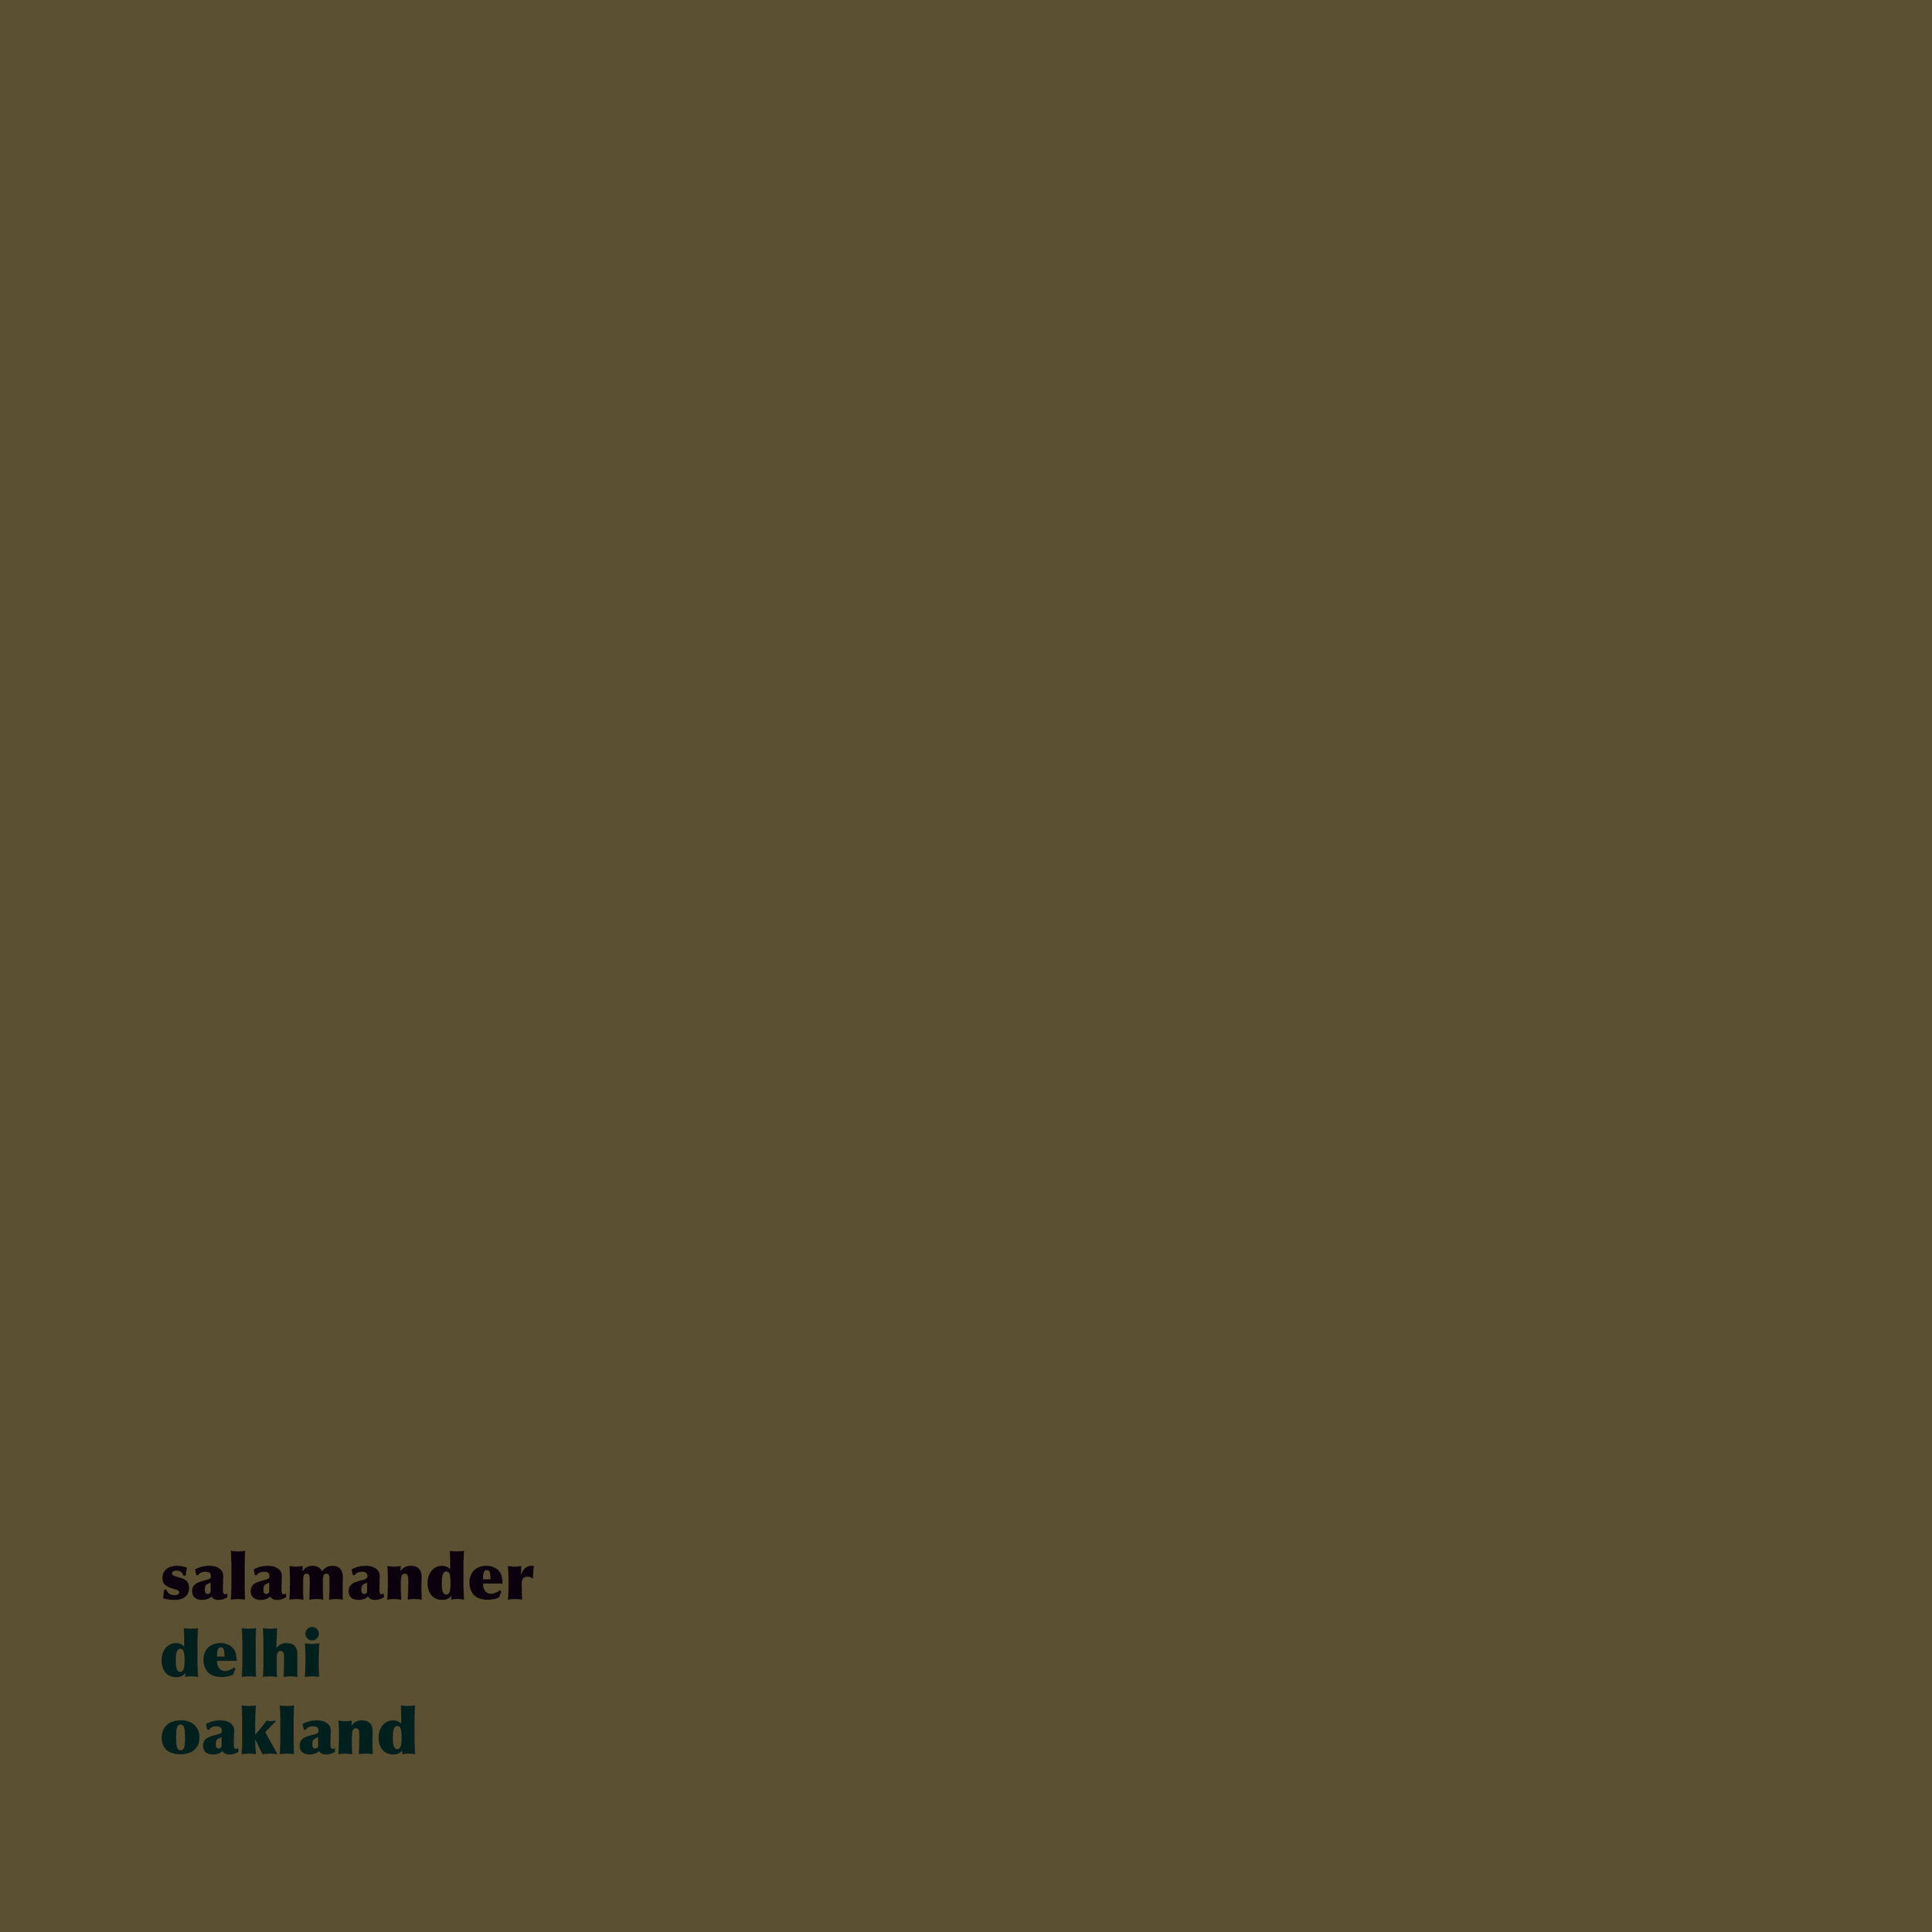 Salamander - Delhi / Oakland (2010)